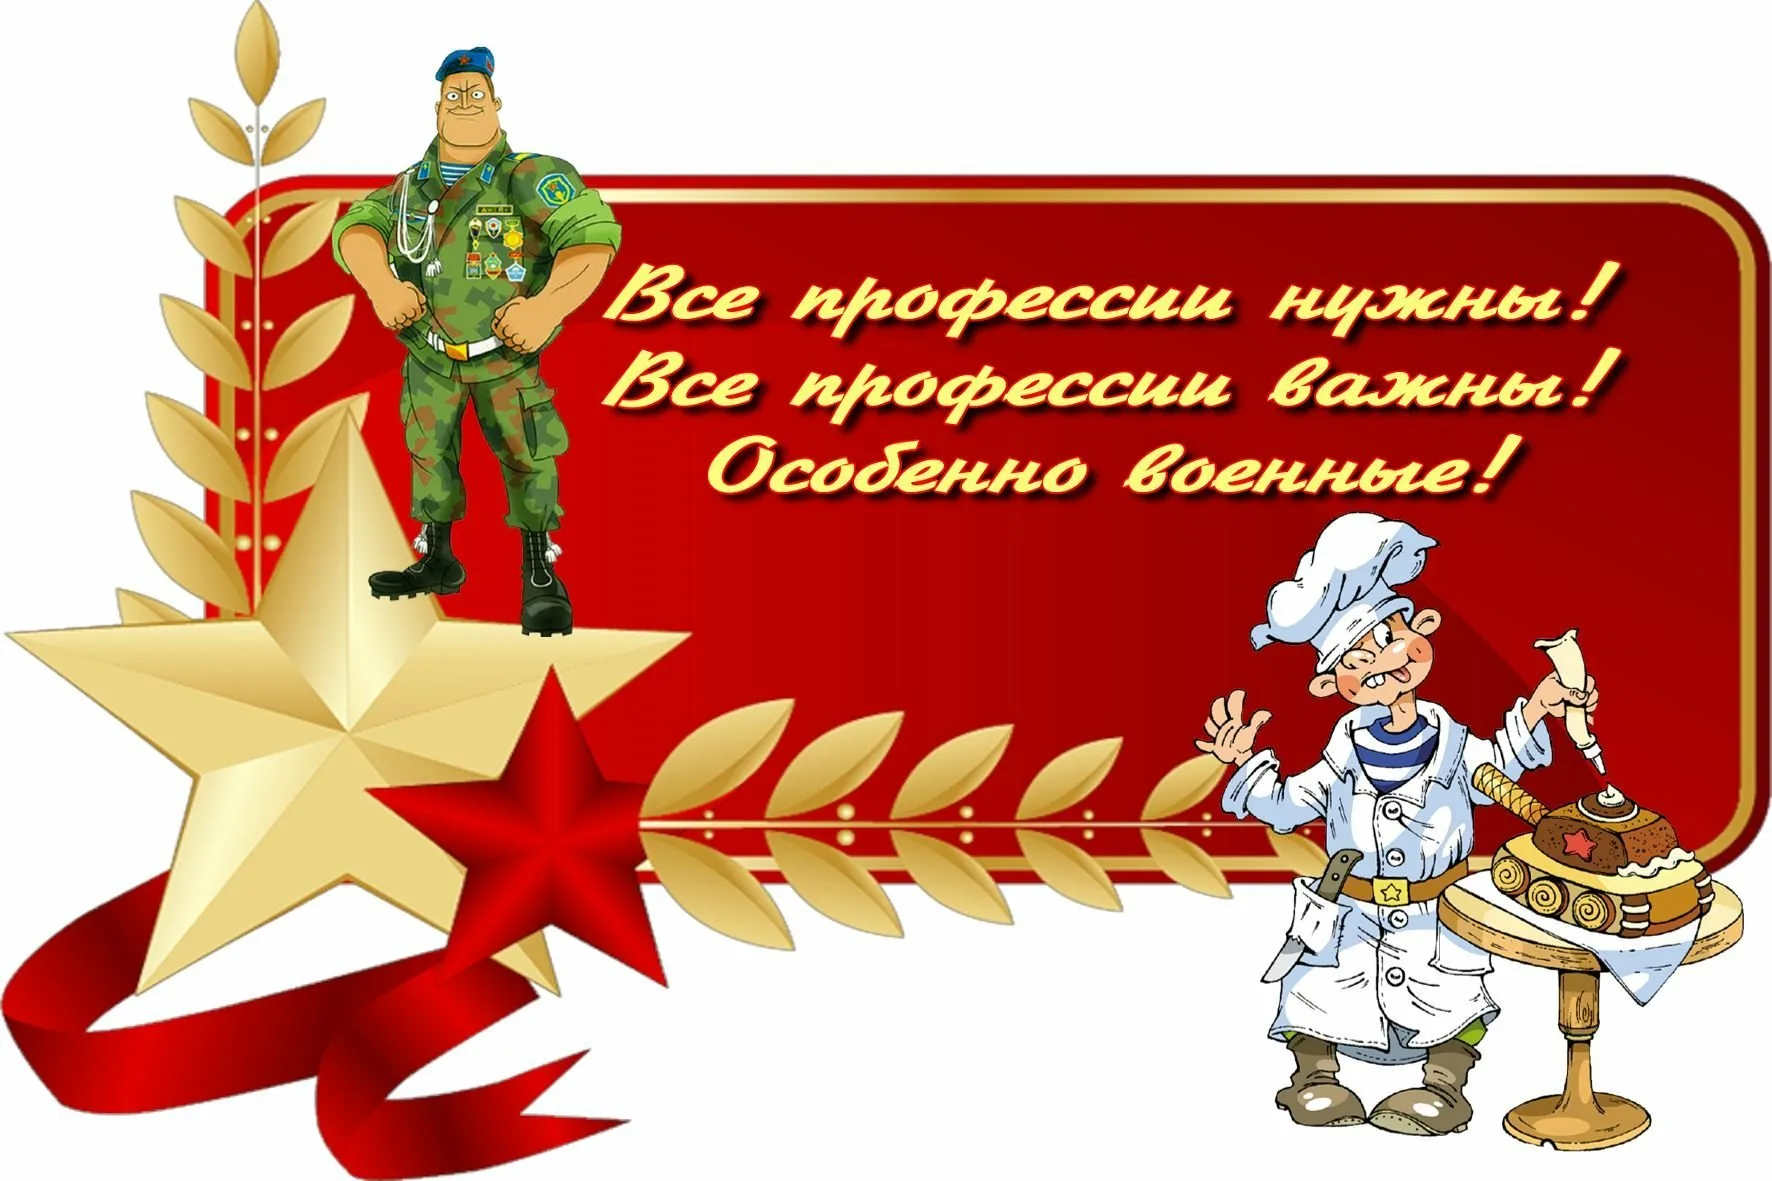 С юбилеем войсковой части поздравляем наших друзей - Бородино